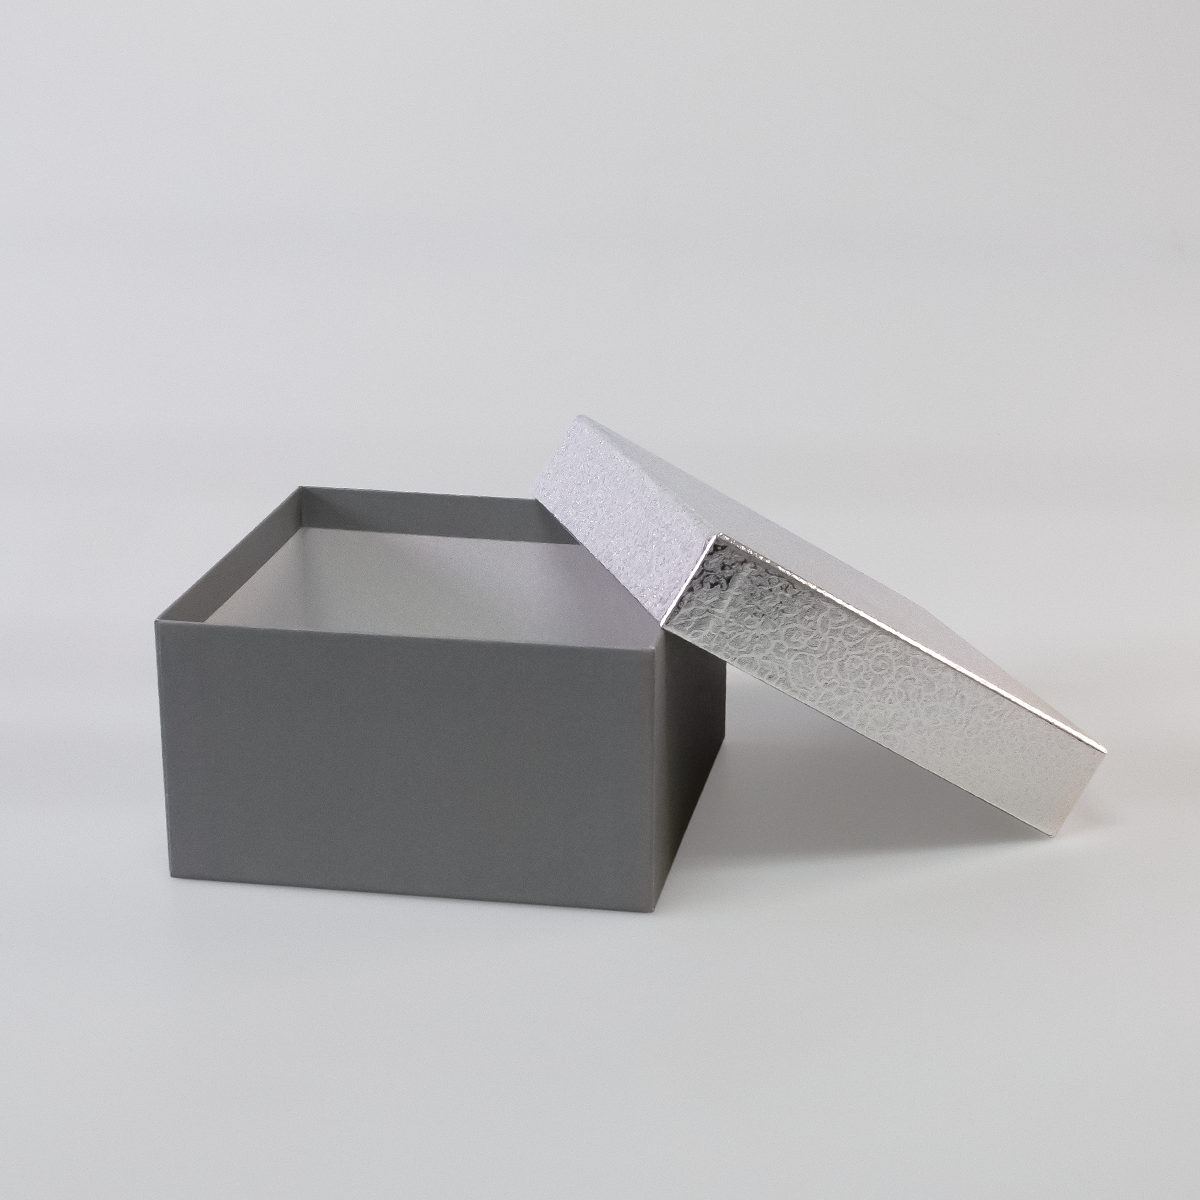 Подарочная коробка крышка-дно, 19 x 19 x 10,5 см. "Блеск", серебряный, серый